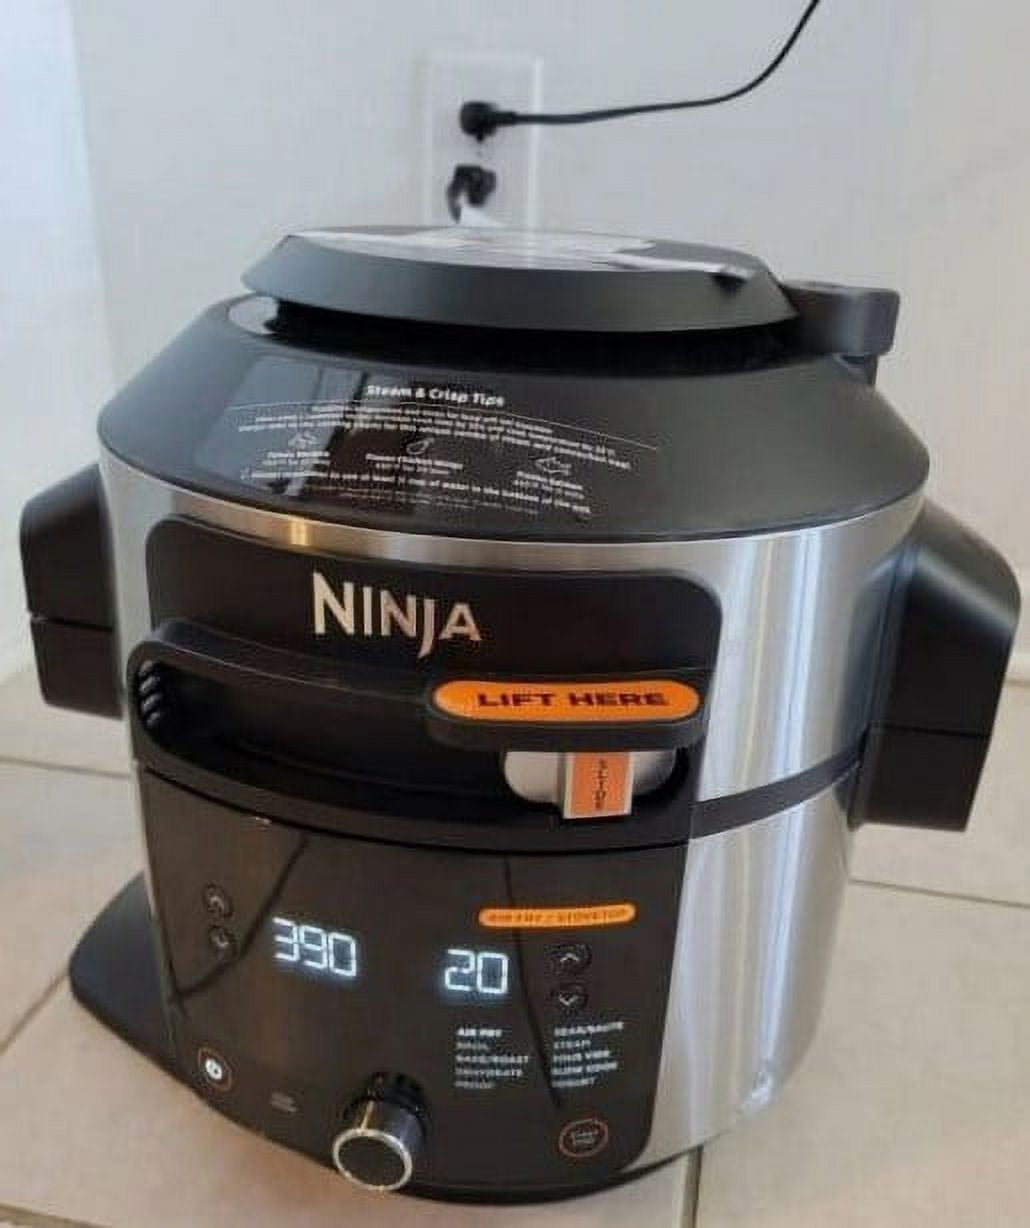 NINJA FOODI PRO 6.5-QUART PRESSURE COOKER – xiaoimportadora